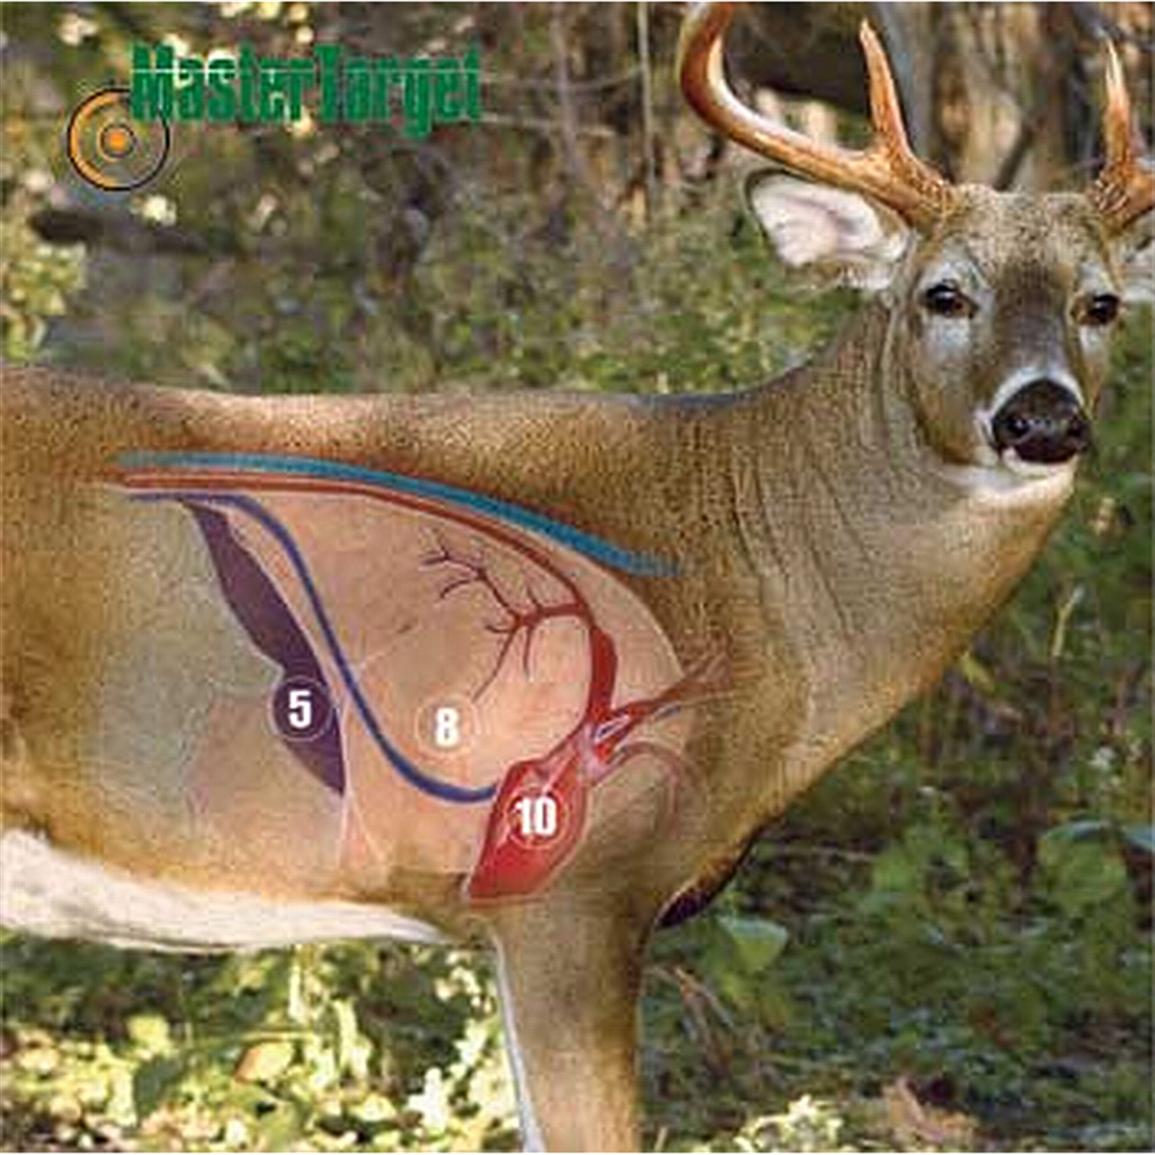 deer-vitals-target-printable